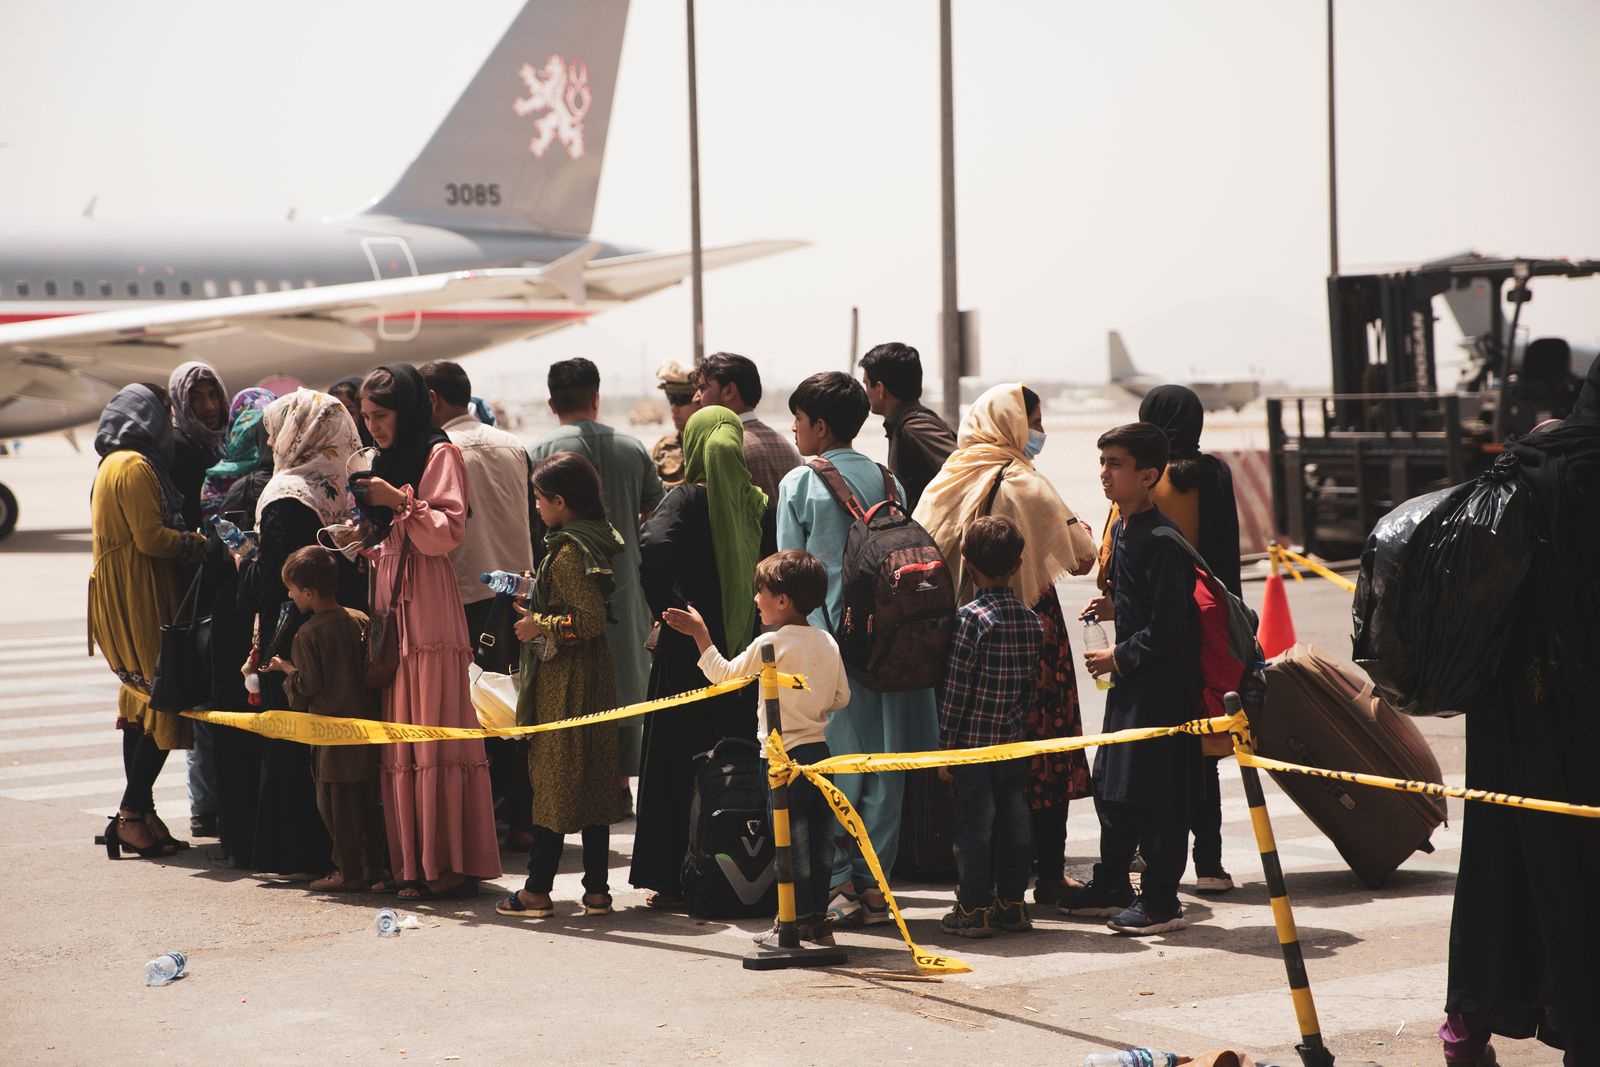 مدنيون يستعدون لركوب طائرة، أثناء عملية إجلاء في مطار حامد كرزاي الدولي ، كابول ، أفغانستان- 18 أغسطس 2021 - via REUTERS